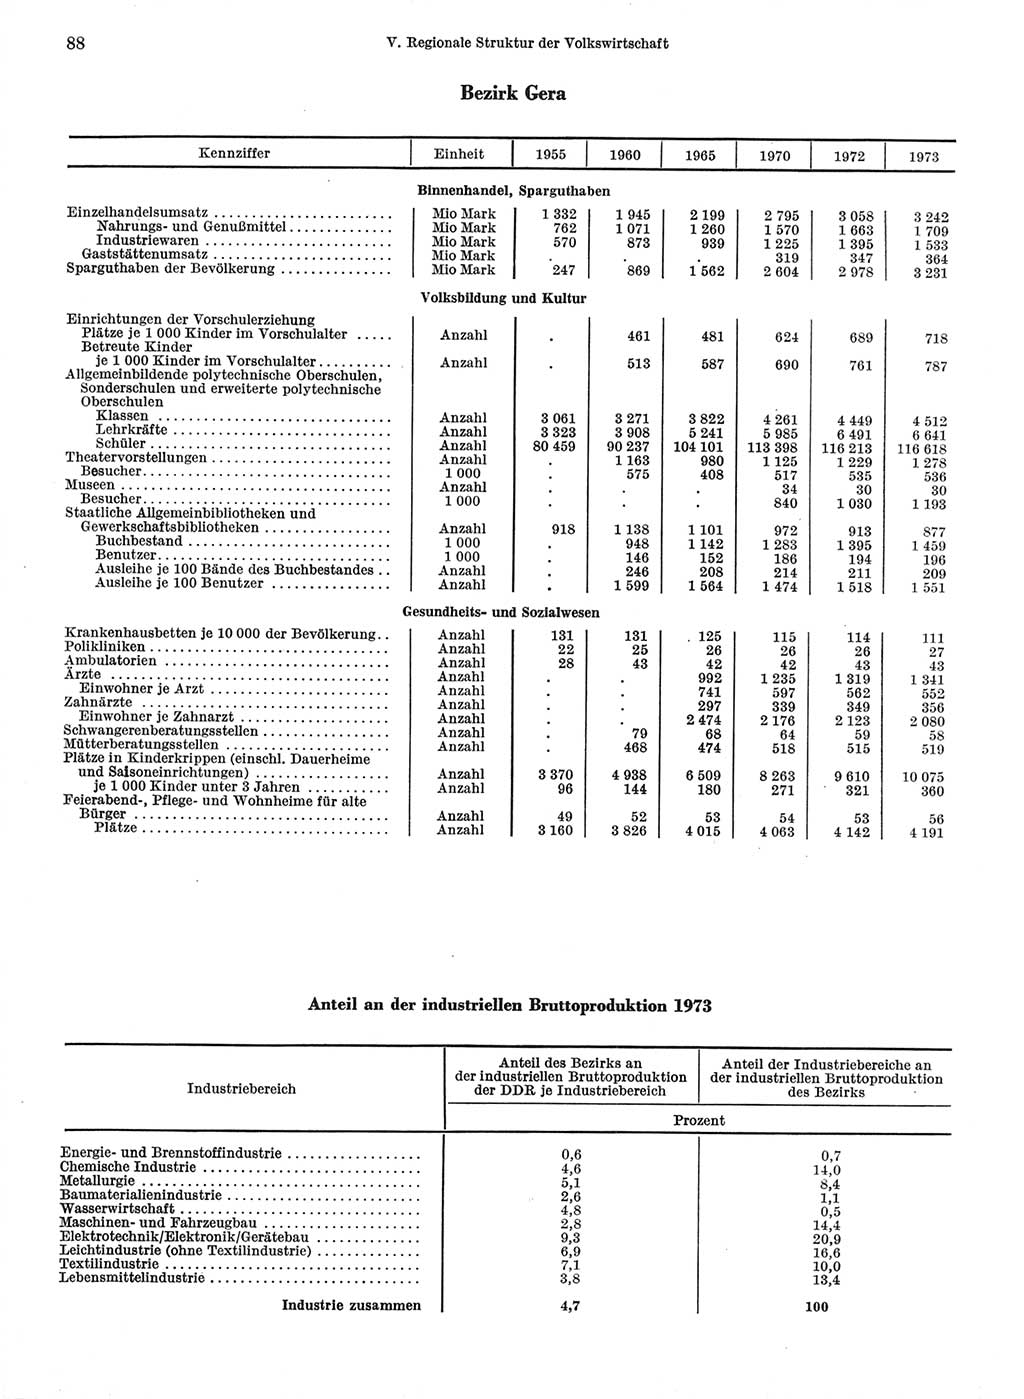 Statistisches Jahrbuch der Deutschen Demokratischen Republik (DDR) 1974, Seite 88 (Stat. Jb. DDR 1974, S. 88)